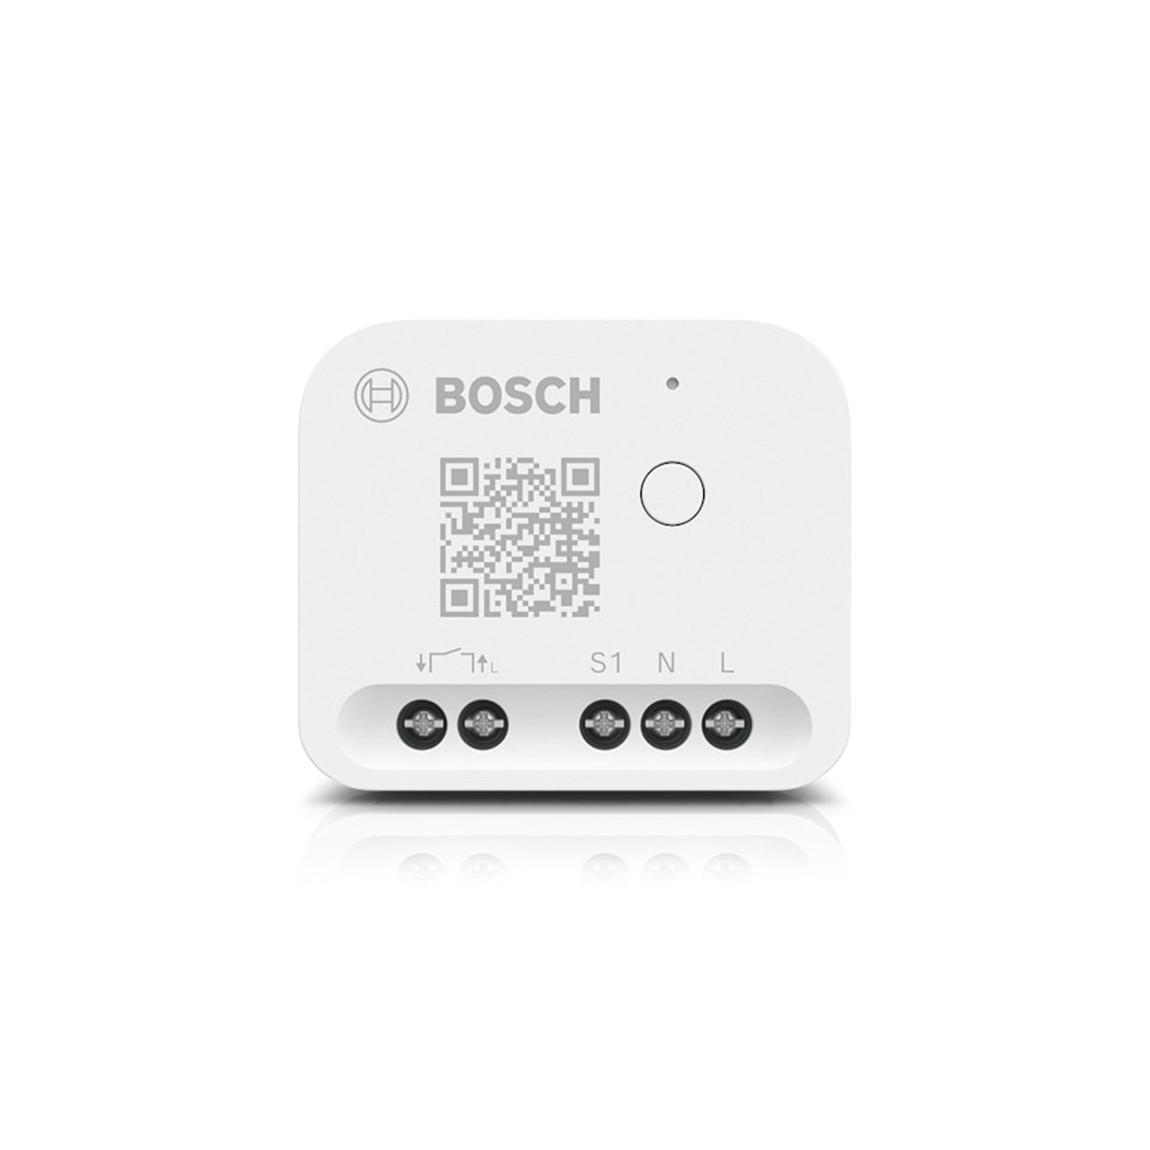 Bosch Smart Home Relais - Unterputz Relais - Weiß_frontal